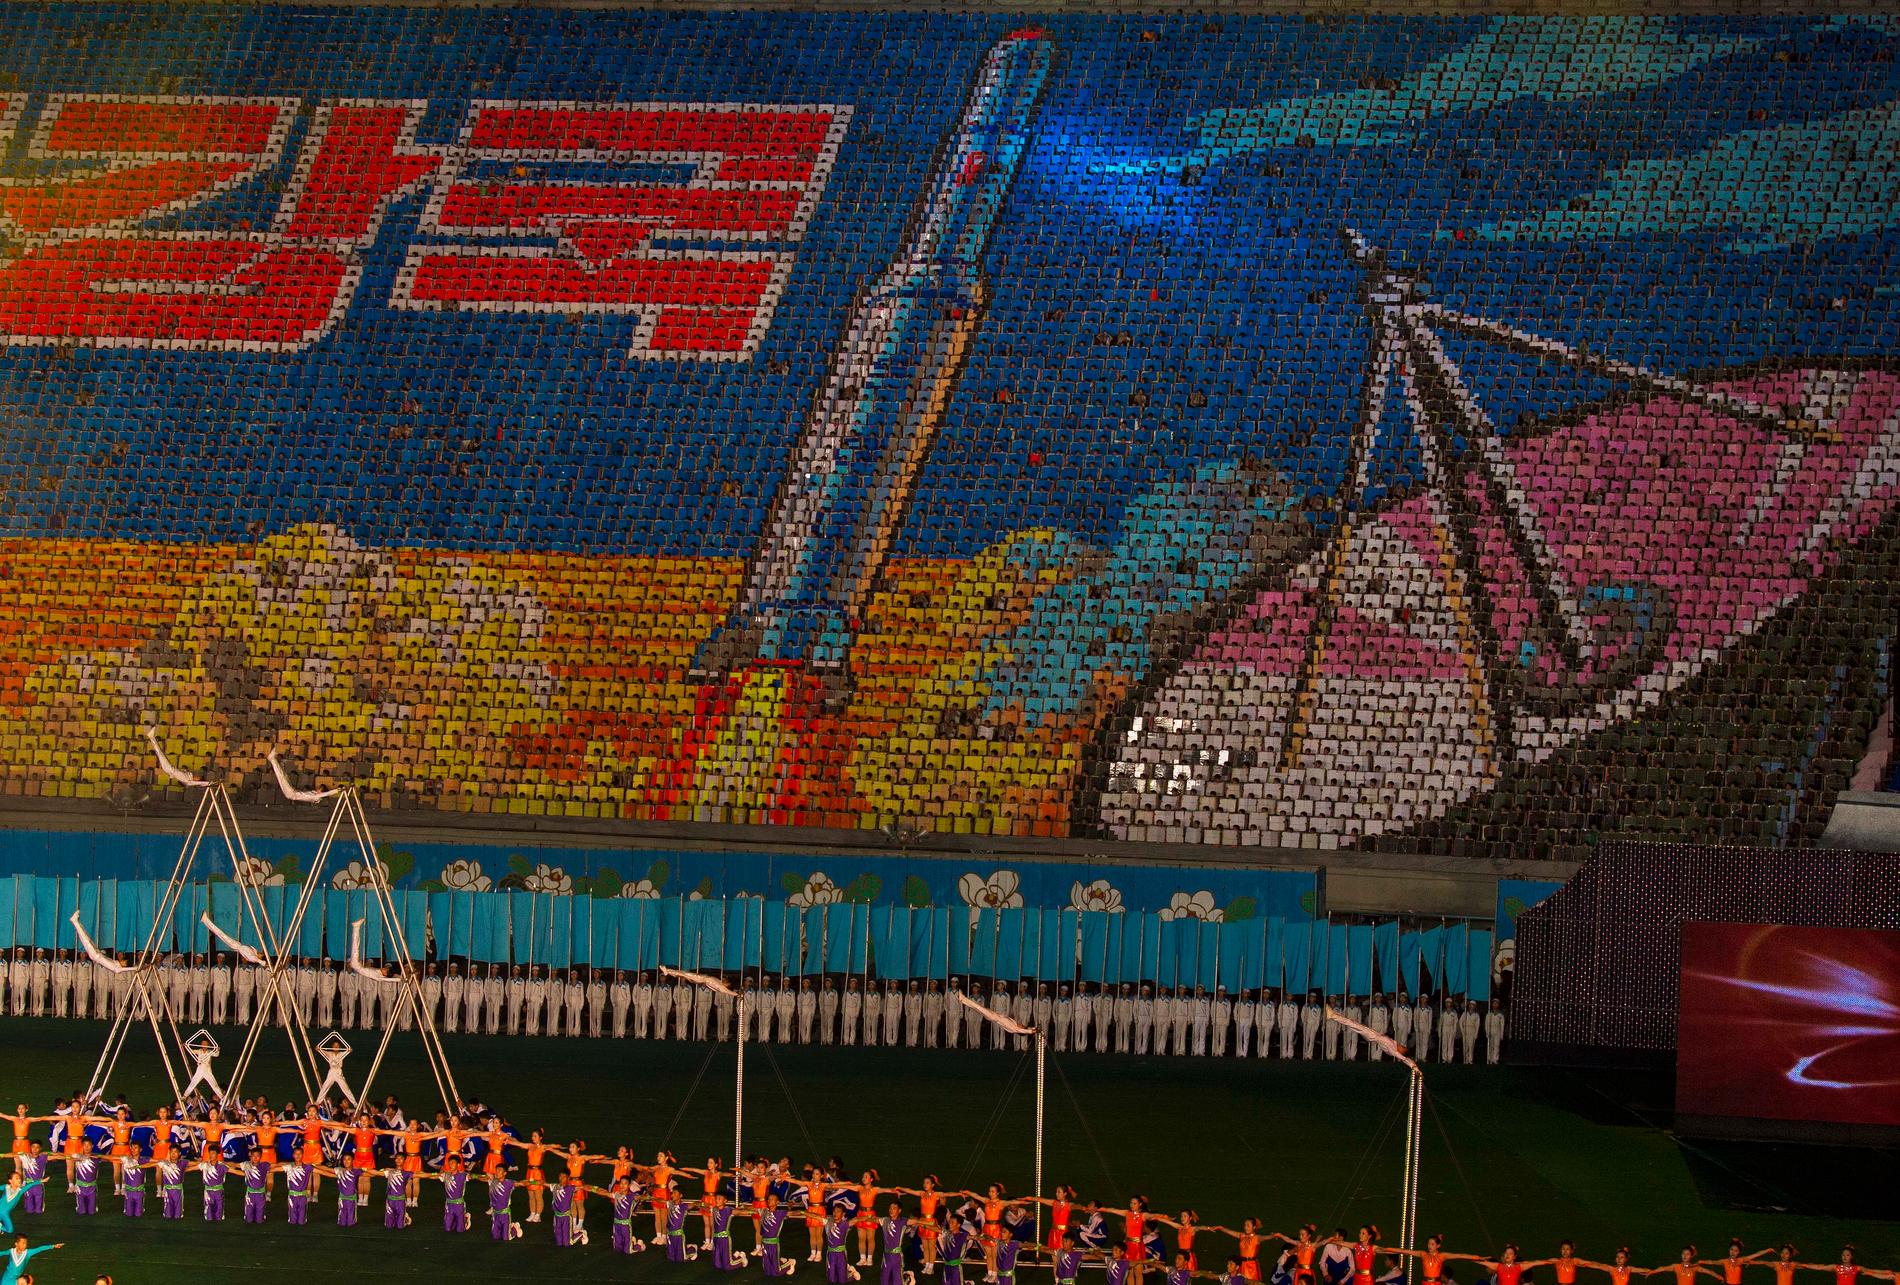 Kortformationer, som skapas genom att tiotusentals människor på exempelvis en arena håller upp färgade papperskort och därmed skapar storskaliga motiv, är tradition i Nordkorea. Sådana har förberetts till landets 70-årsfirande. Fotot är taget i Pyongyang 2013.